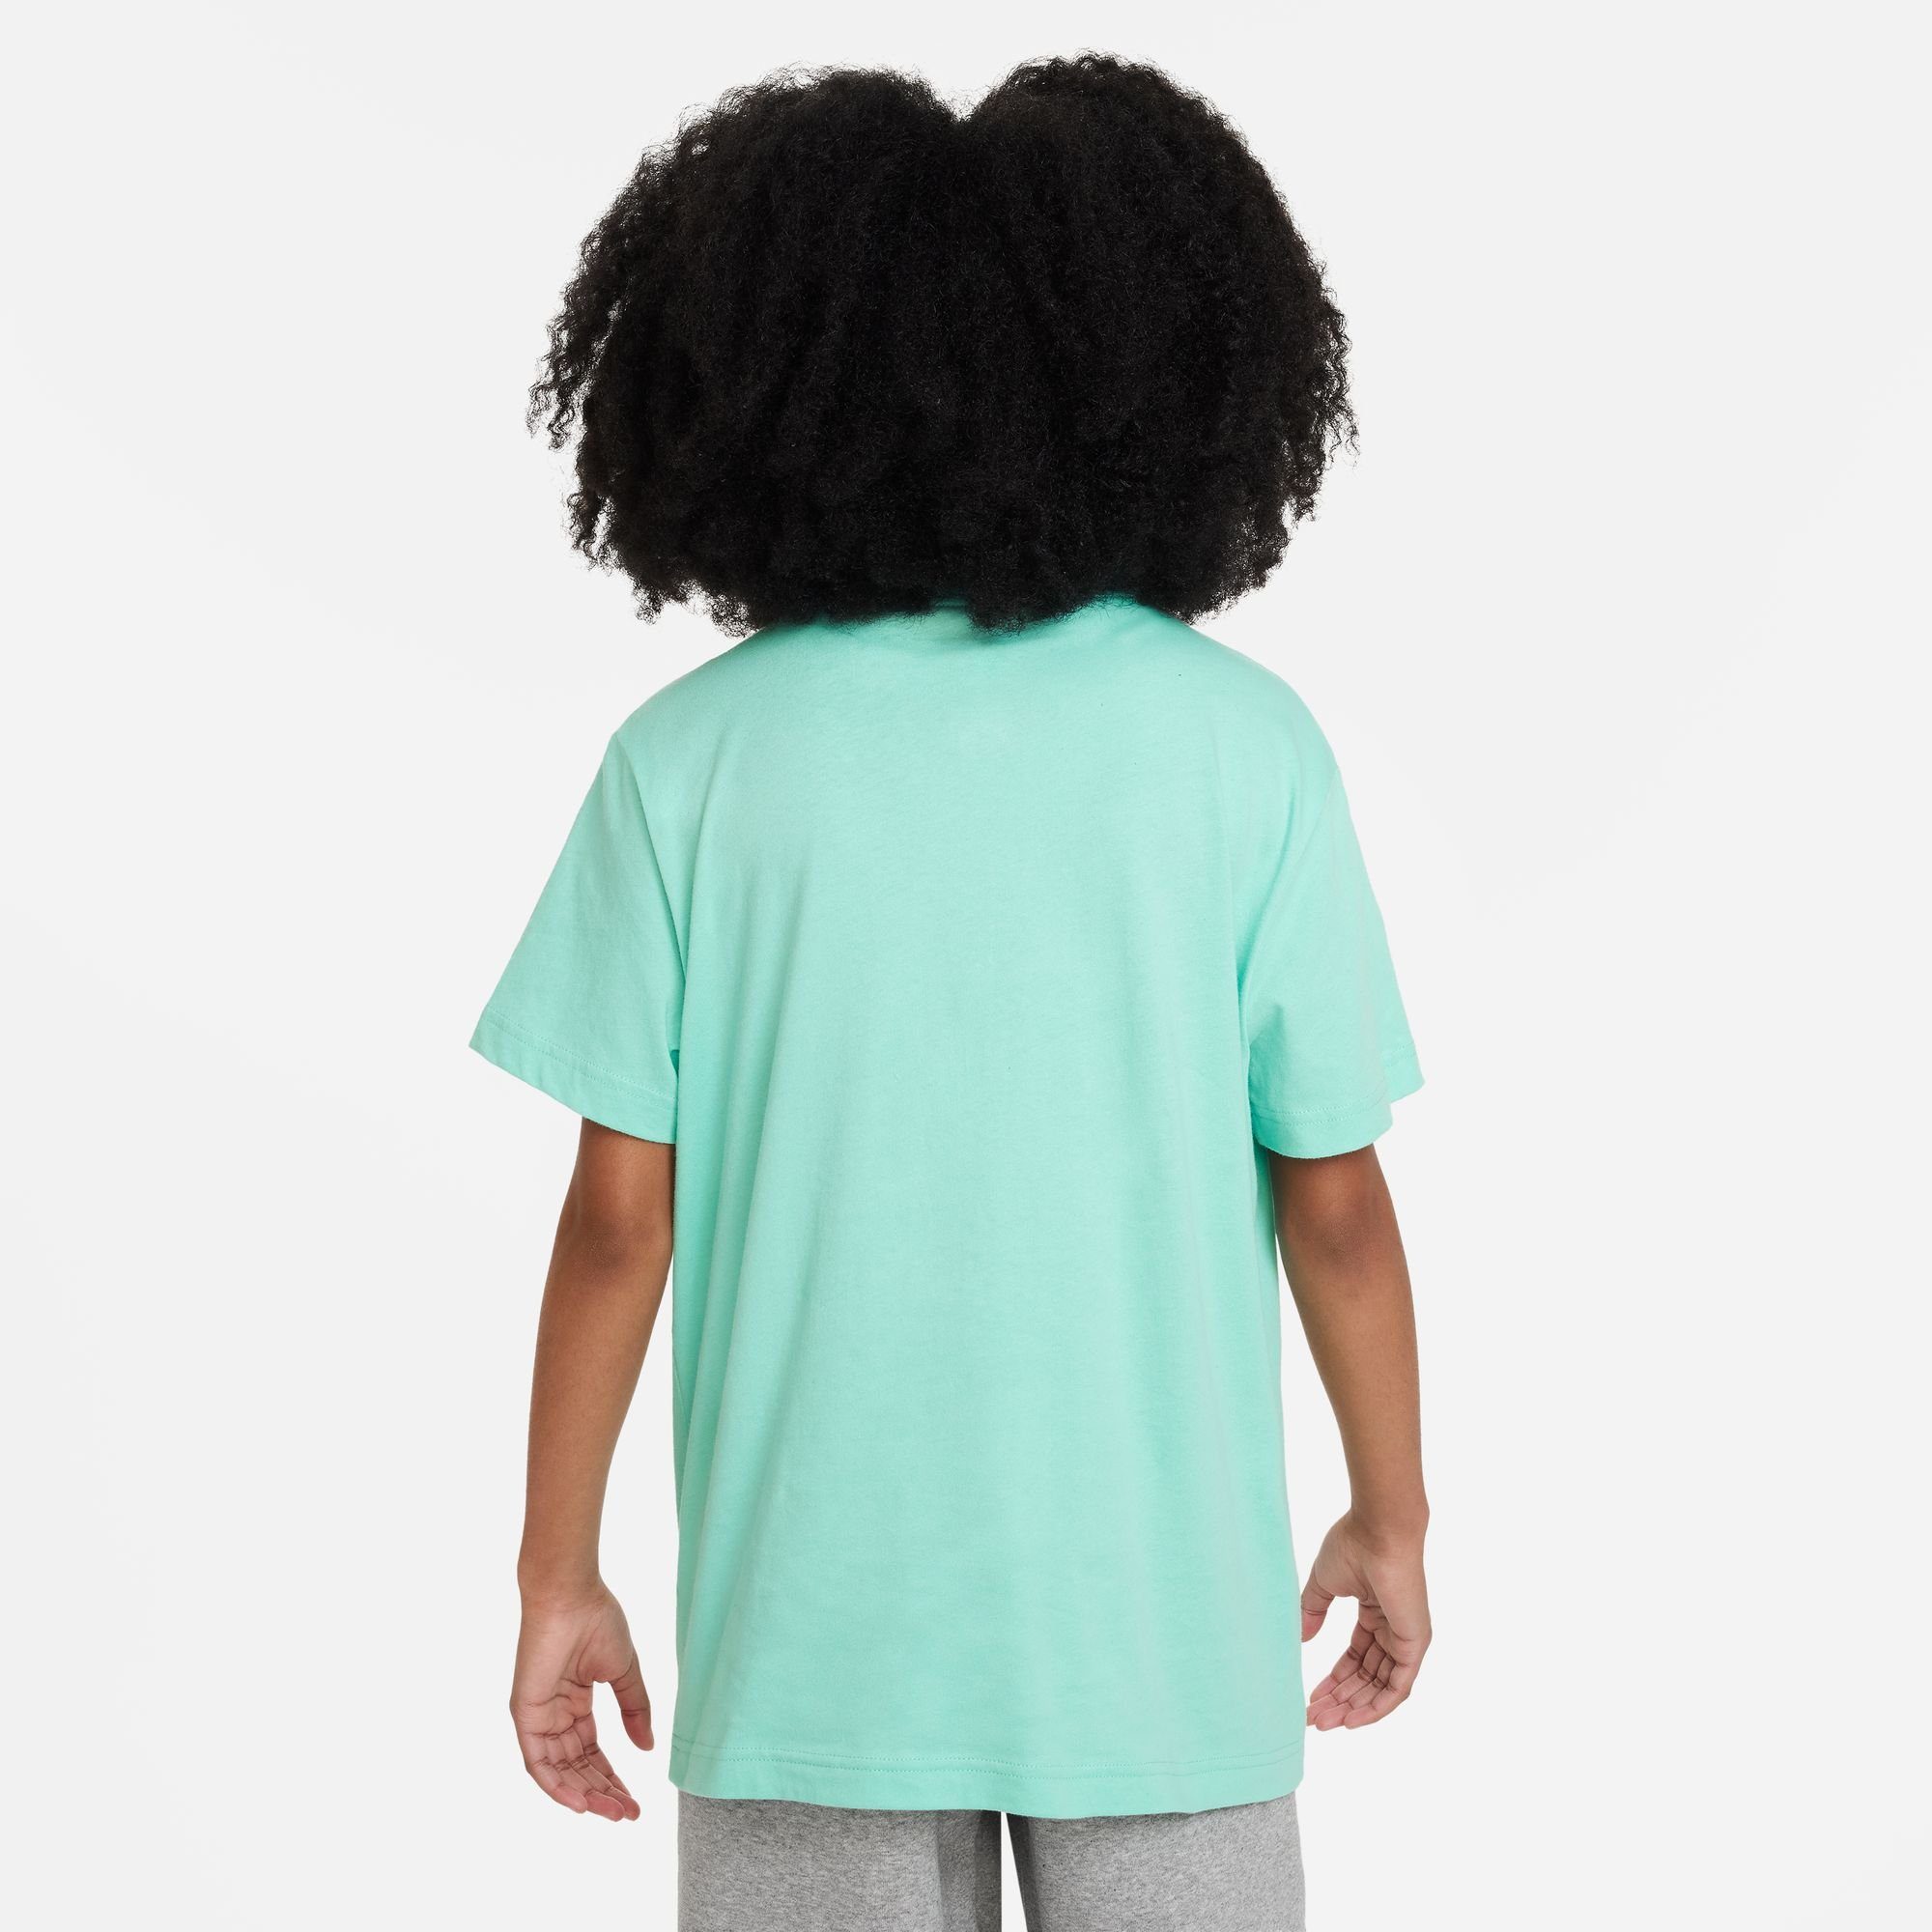 BIG T-SHIRT Nike T-Shirt EMERALD Sportswear RISE (GIRLS) KIDS'